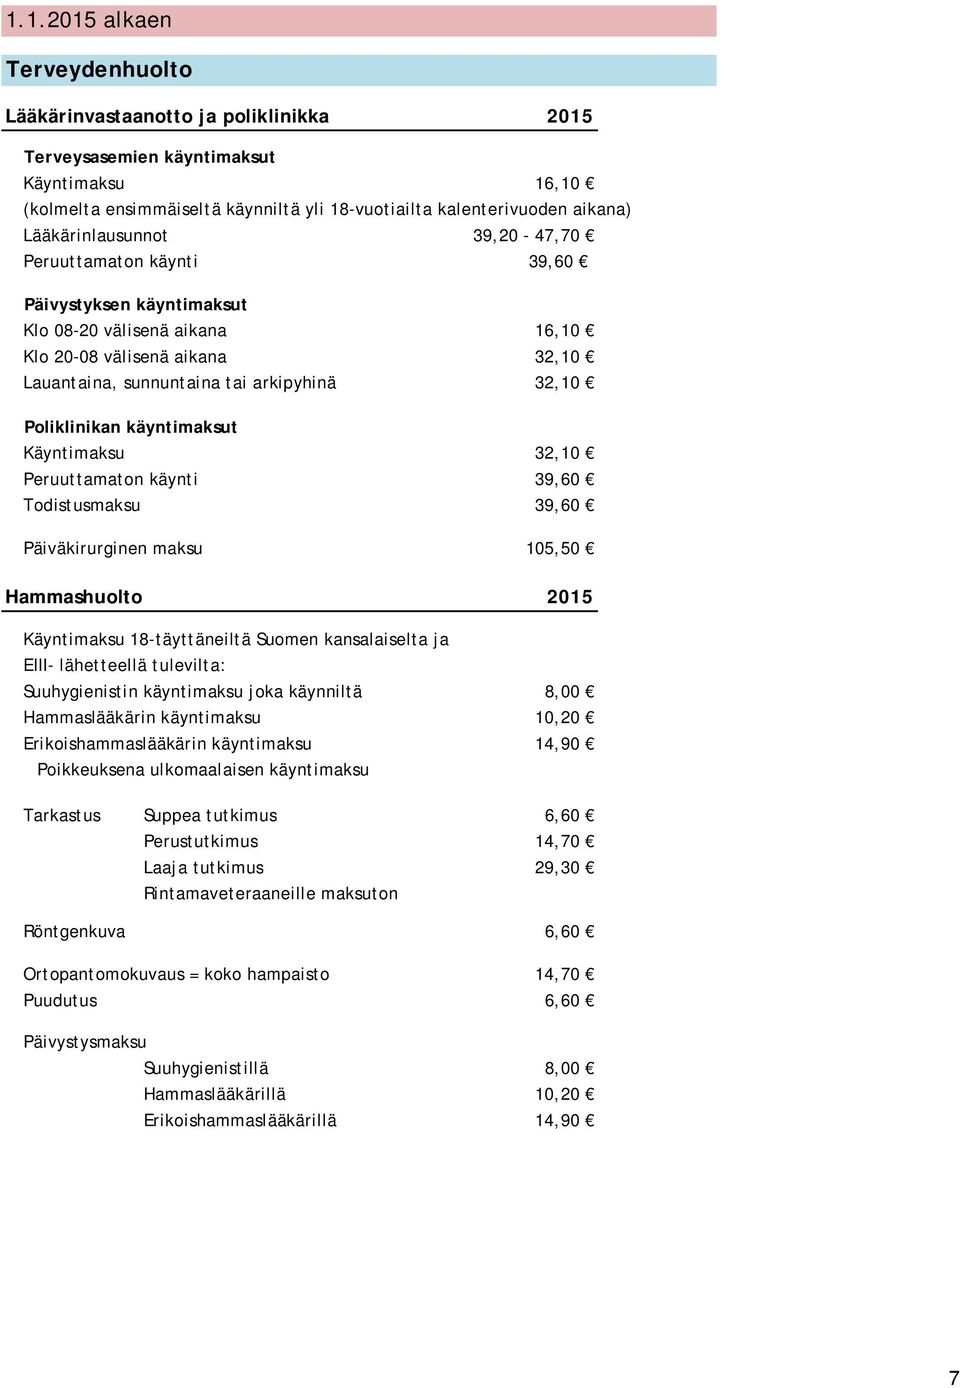 Poliklinikan käyntimaksut Käyntimaksu 32,10 Peruuttamaton käynti 39,60 Todistusmaksu 39,60 Päiväkirurginen maksu 105,50 Hammashuolto 2015 Käyntimaksu 18-täyttäneiltä Suomen kansalaiselta ja EIII-